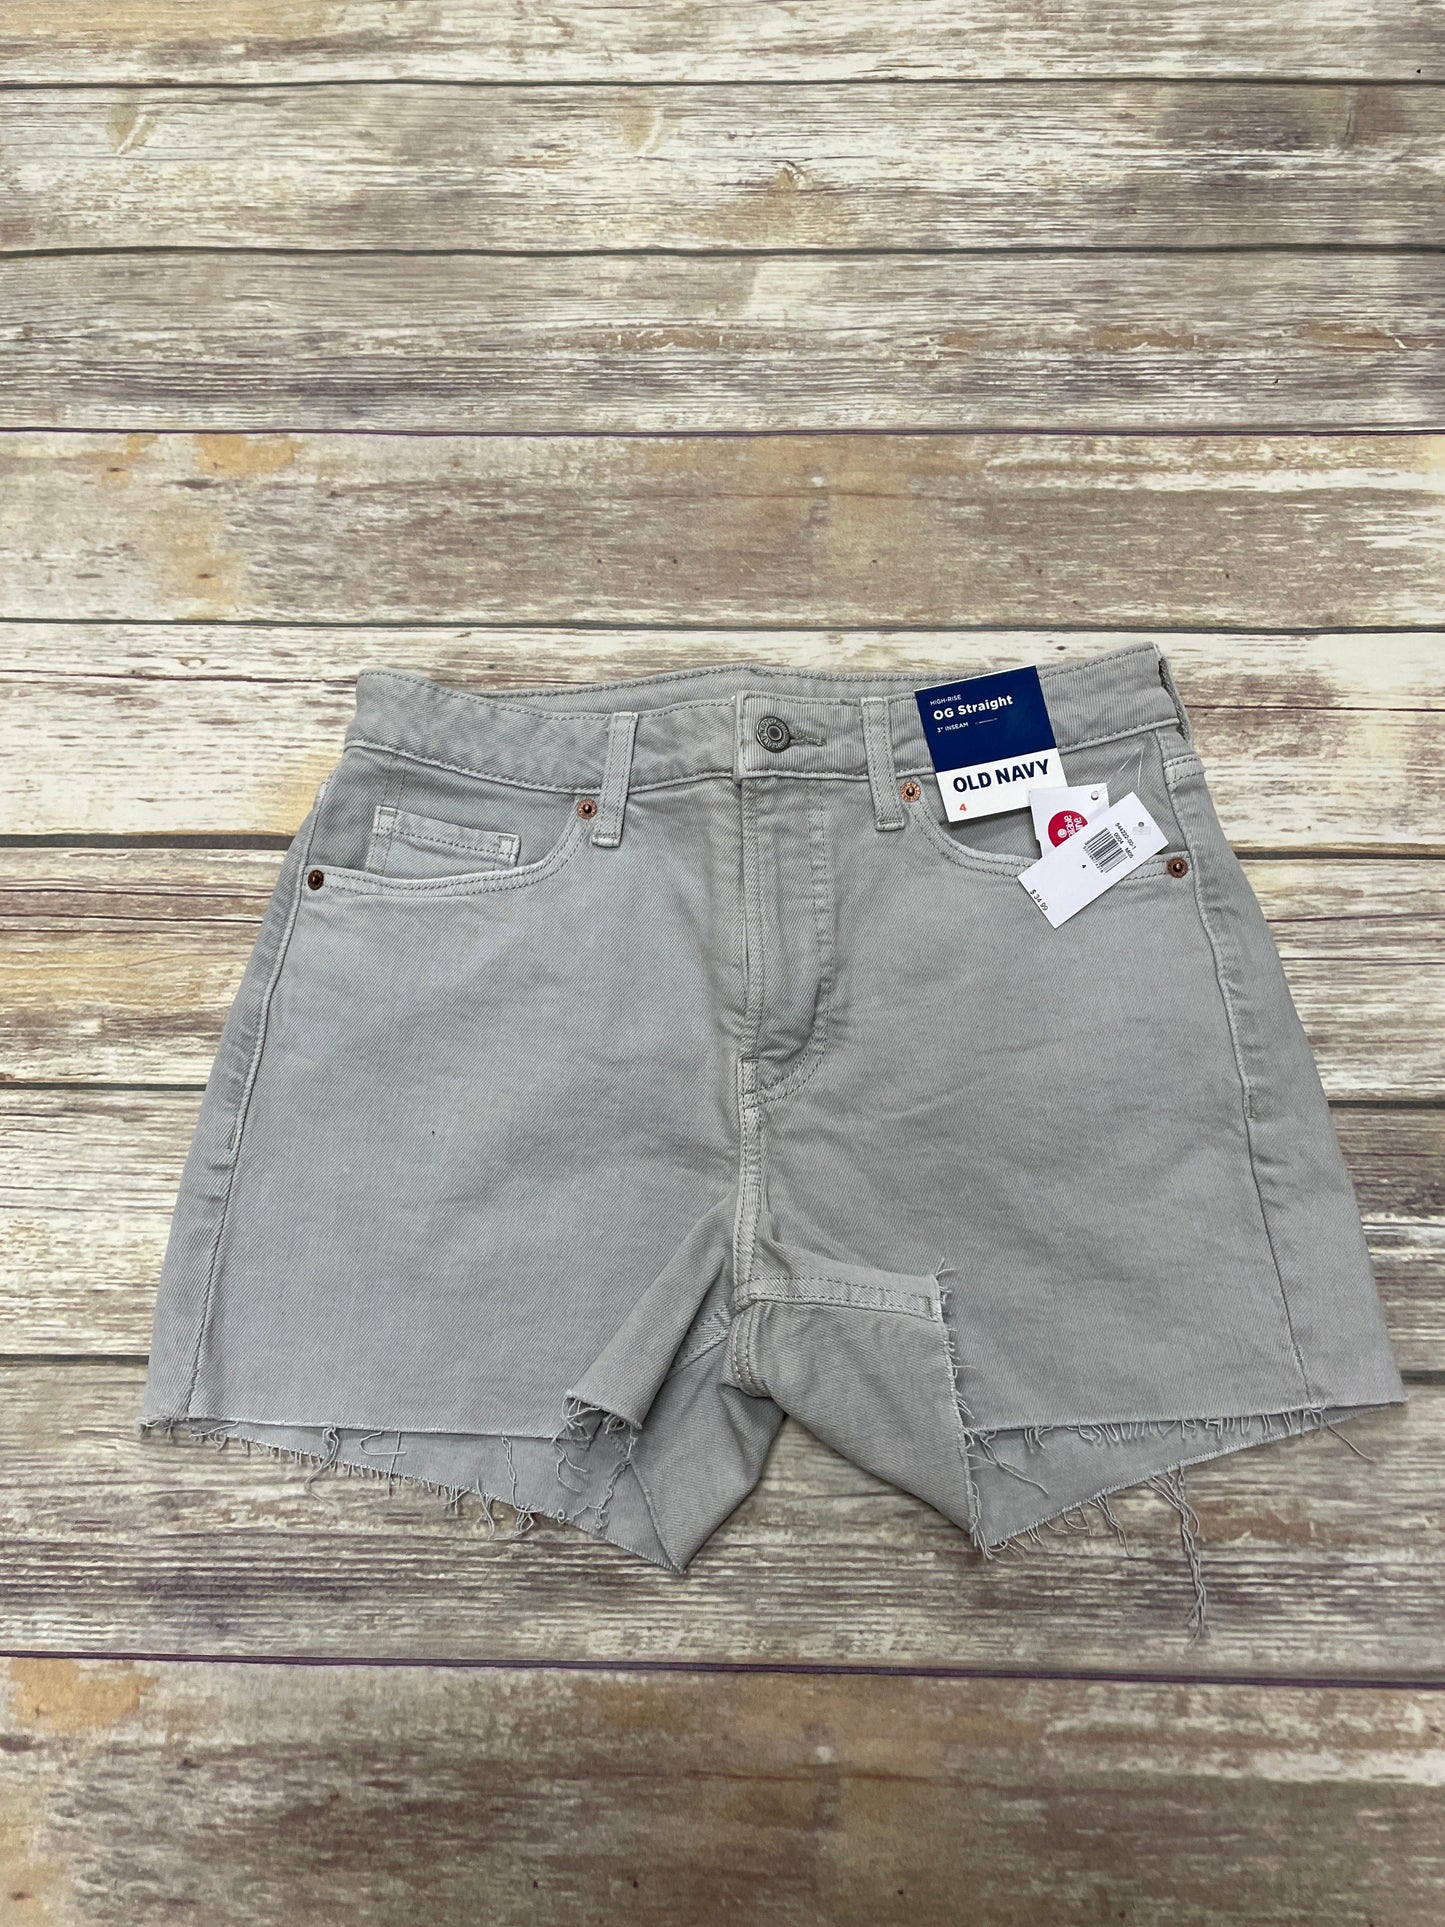 Grey Denim Shorts Old Navy, Size 4